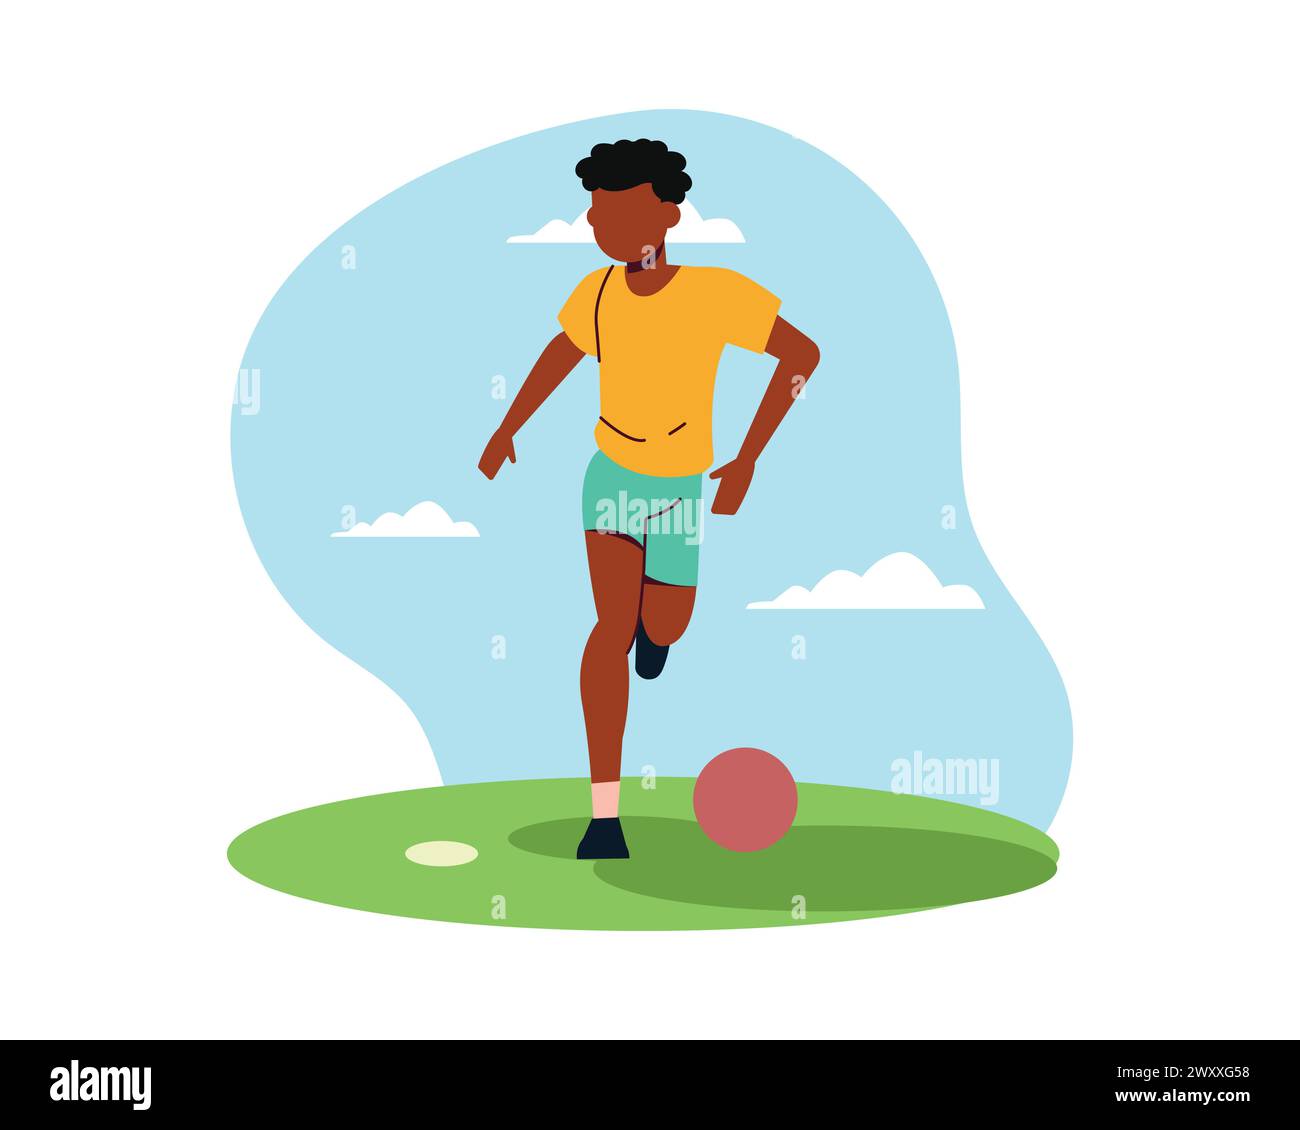 Un joueur de football dribble une balle. Illustration plate simple pour le vecteur de conception de sport et de loisirs. Concept de personnes actives pour une vie saine. Illustration de Vecteur